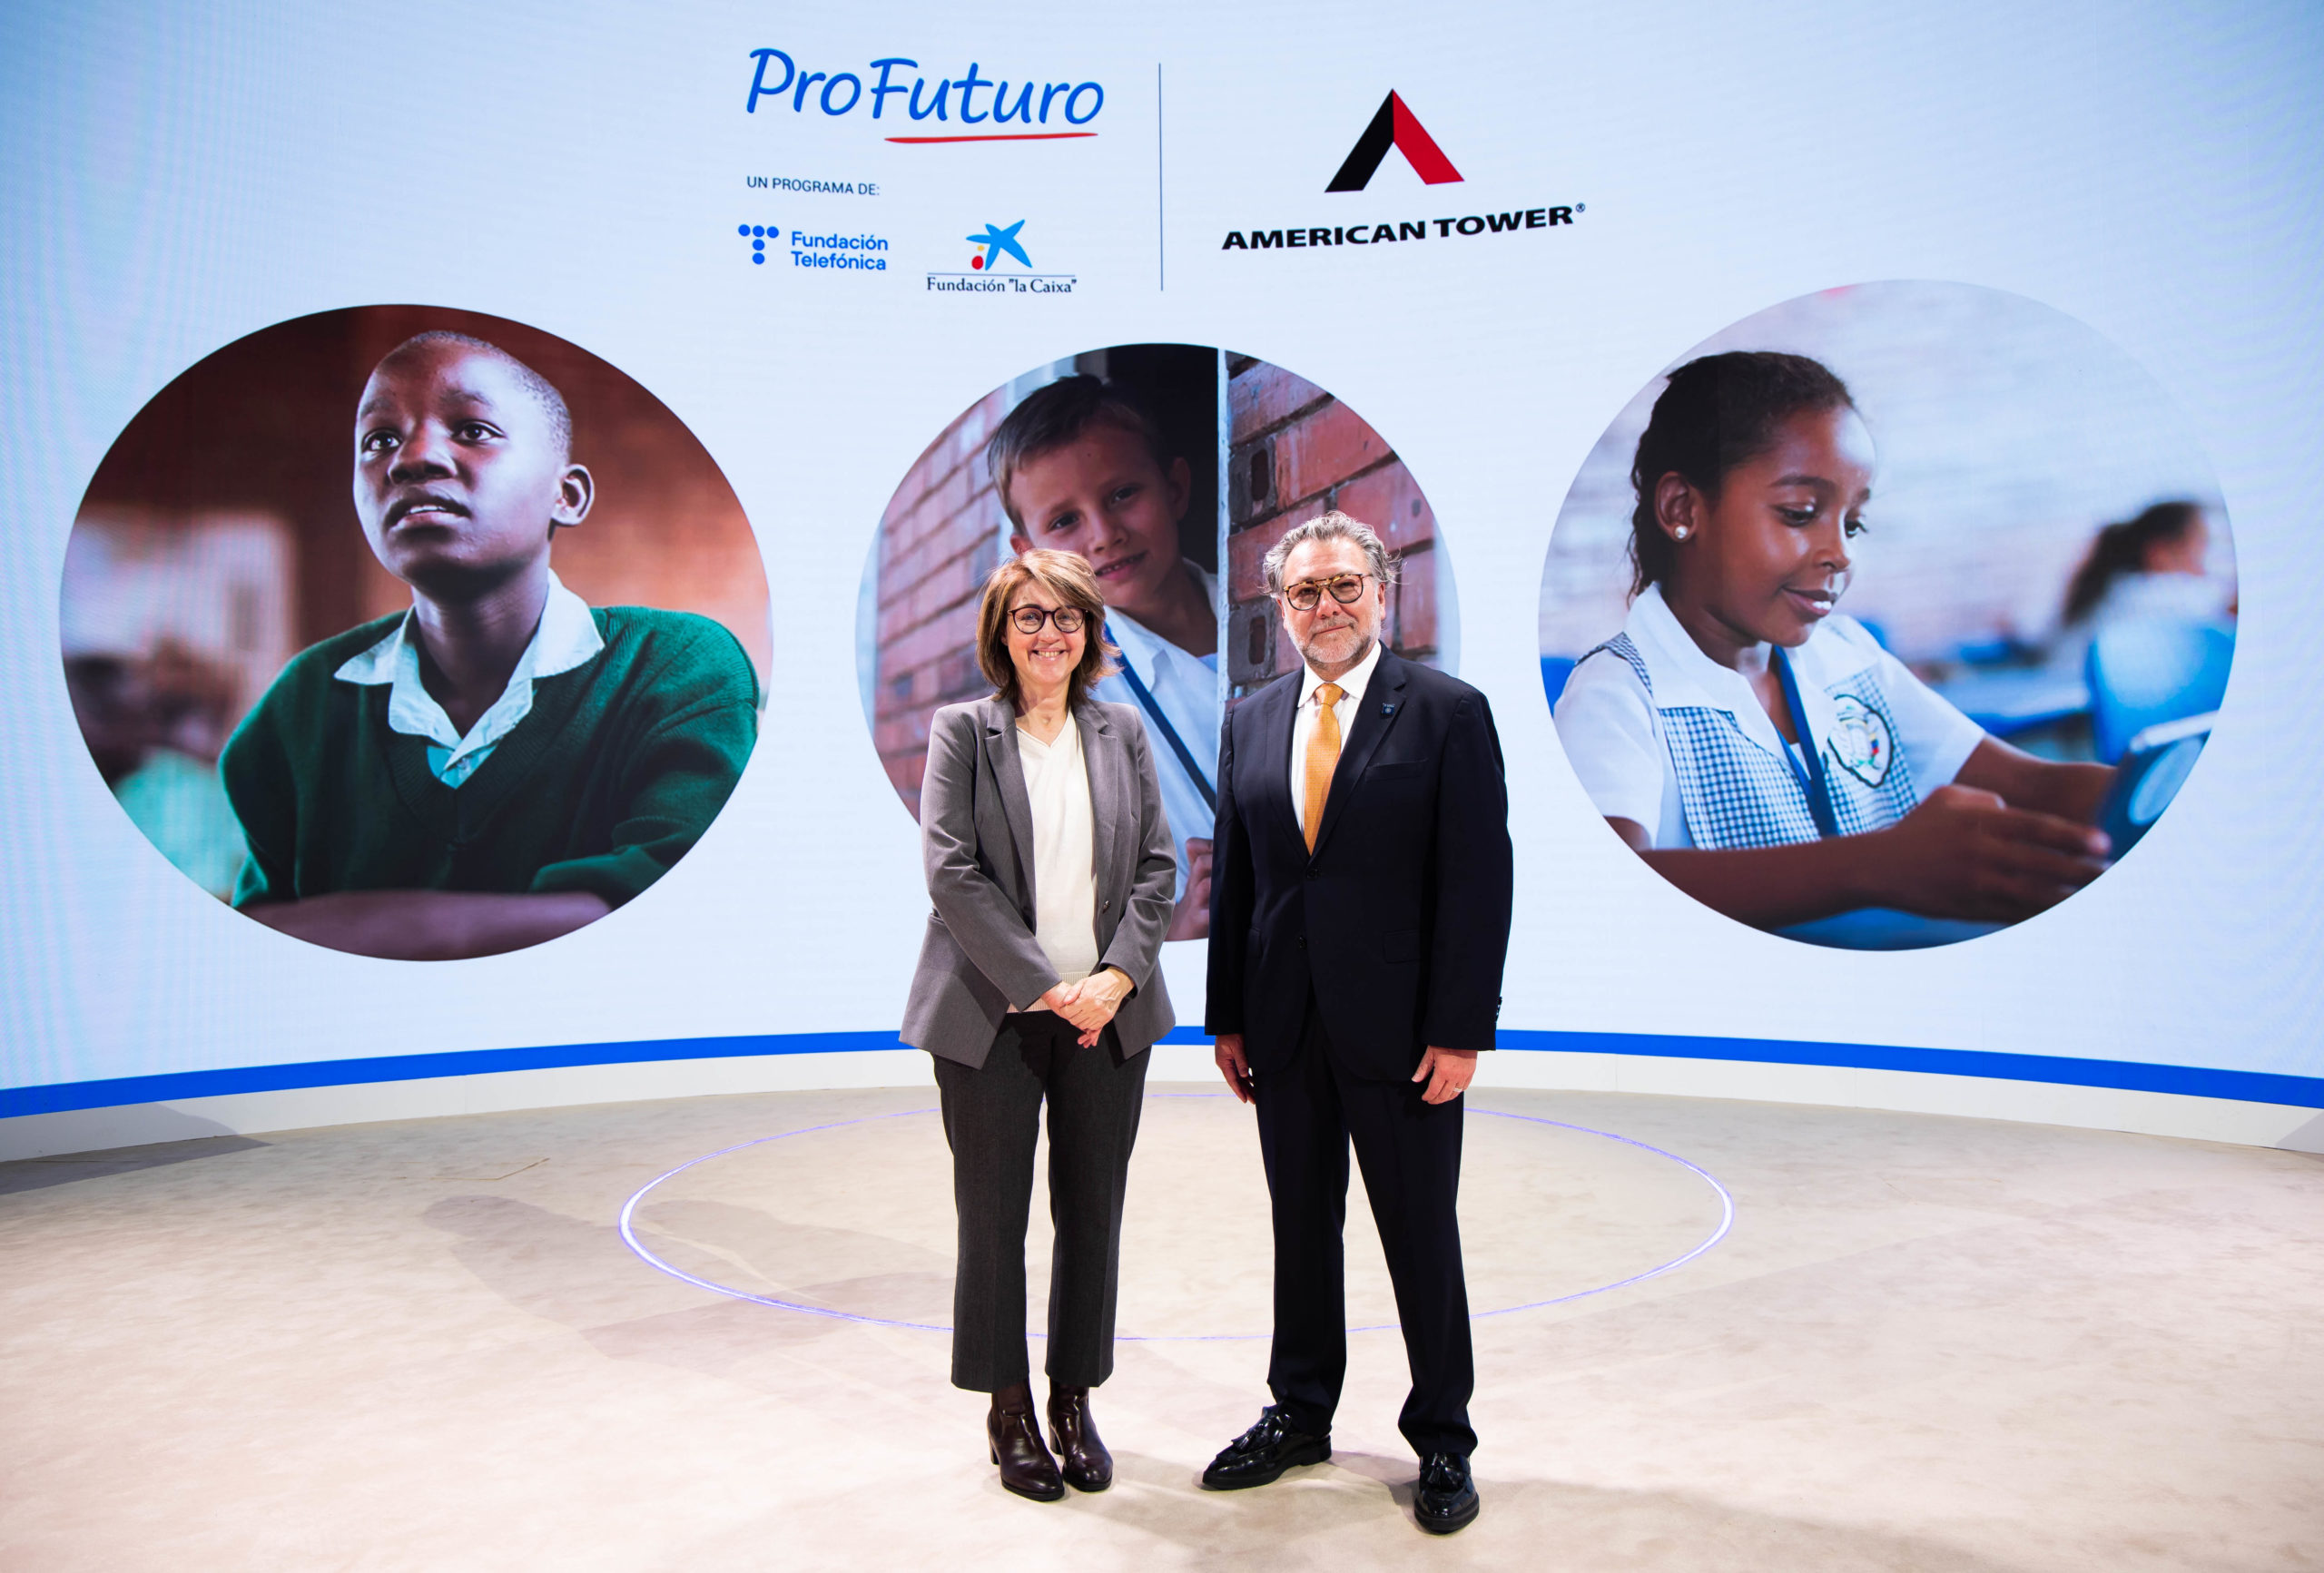 Acuerdo de ProFuturo y American Tower para llevar innovación educativa con tecnología a escuelas vulnerables de América Latina y África